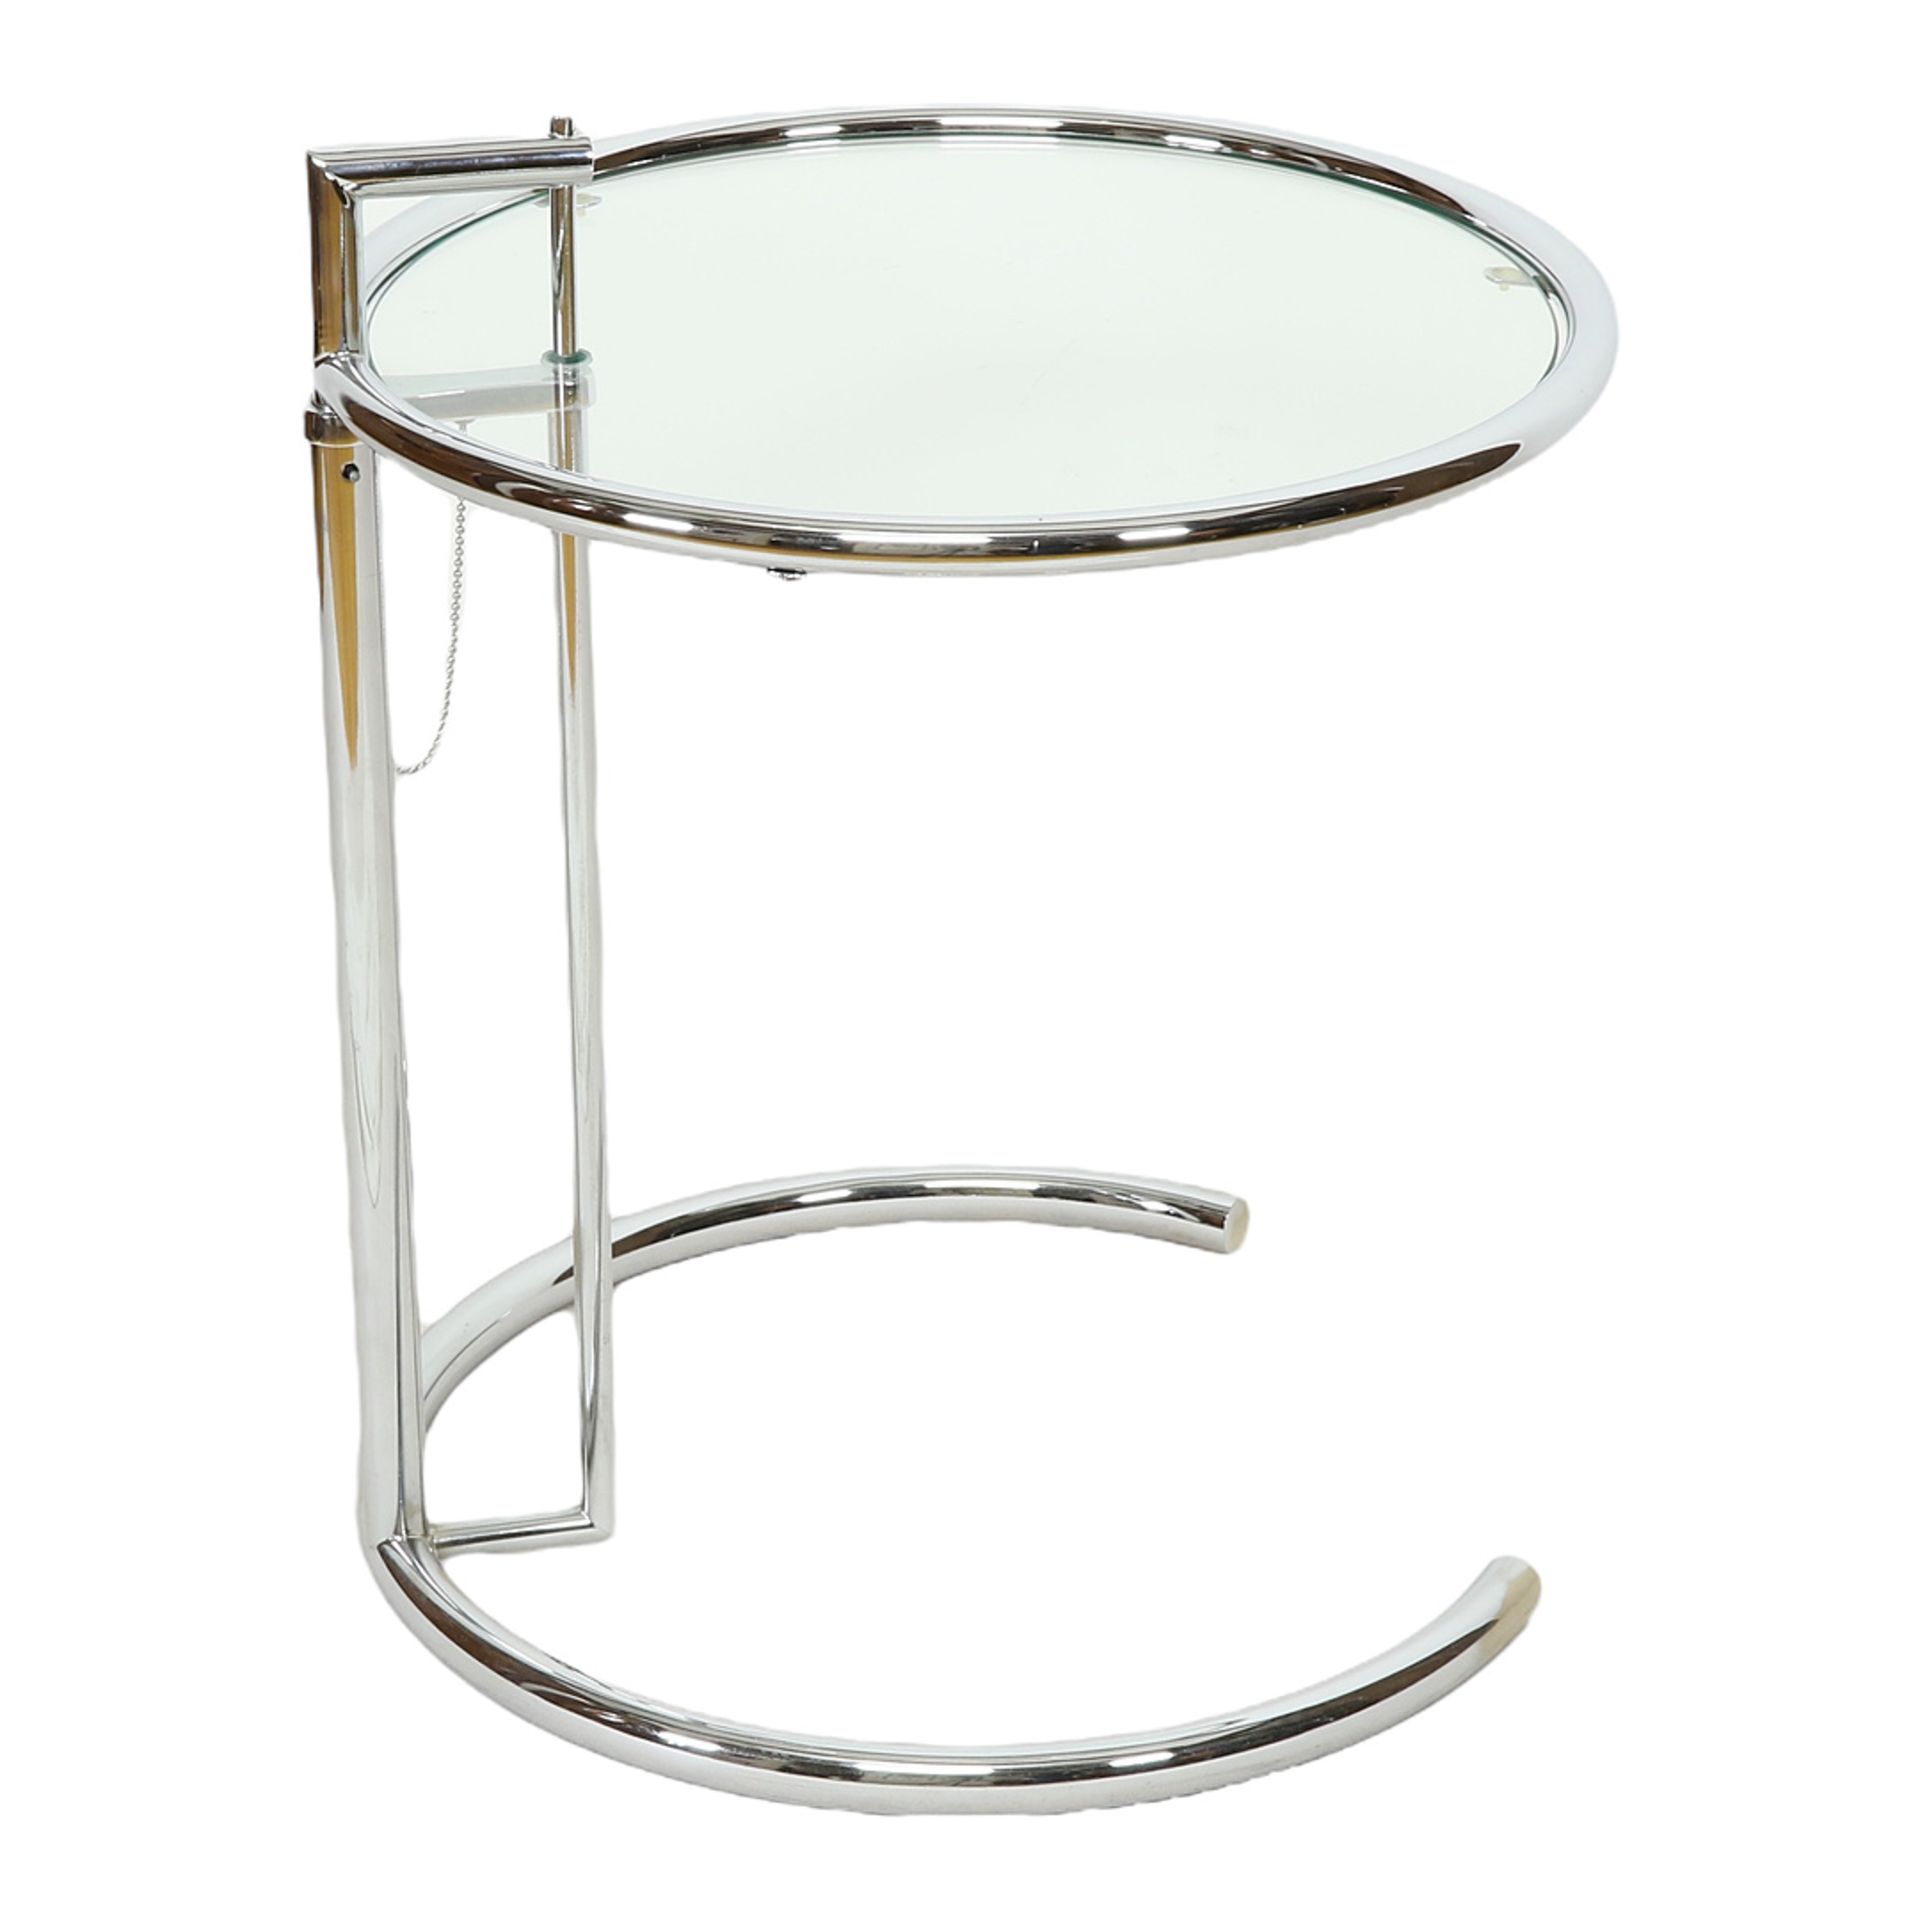 Eileen Gray Moderner Beistelltisch E.1027 "Adjustable Table" - Bild 3 aus 4